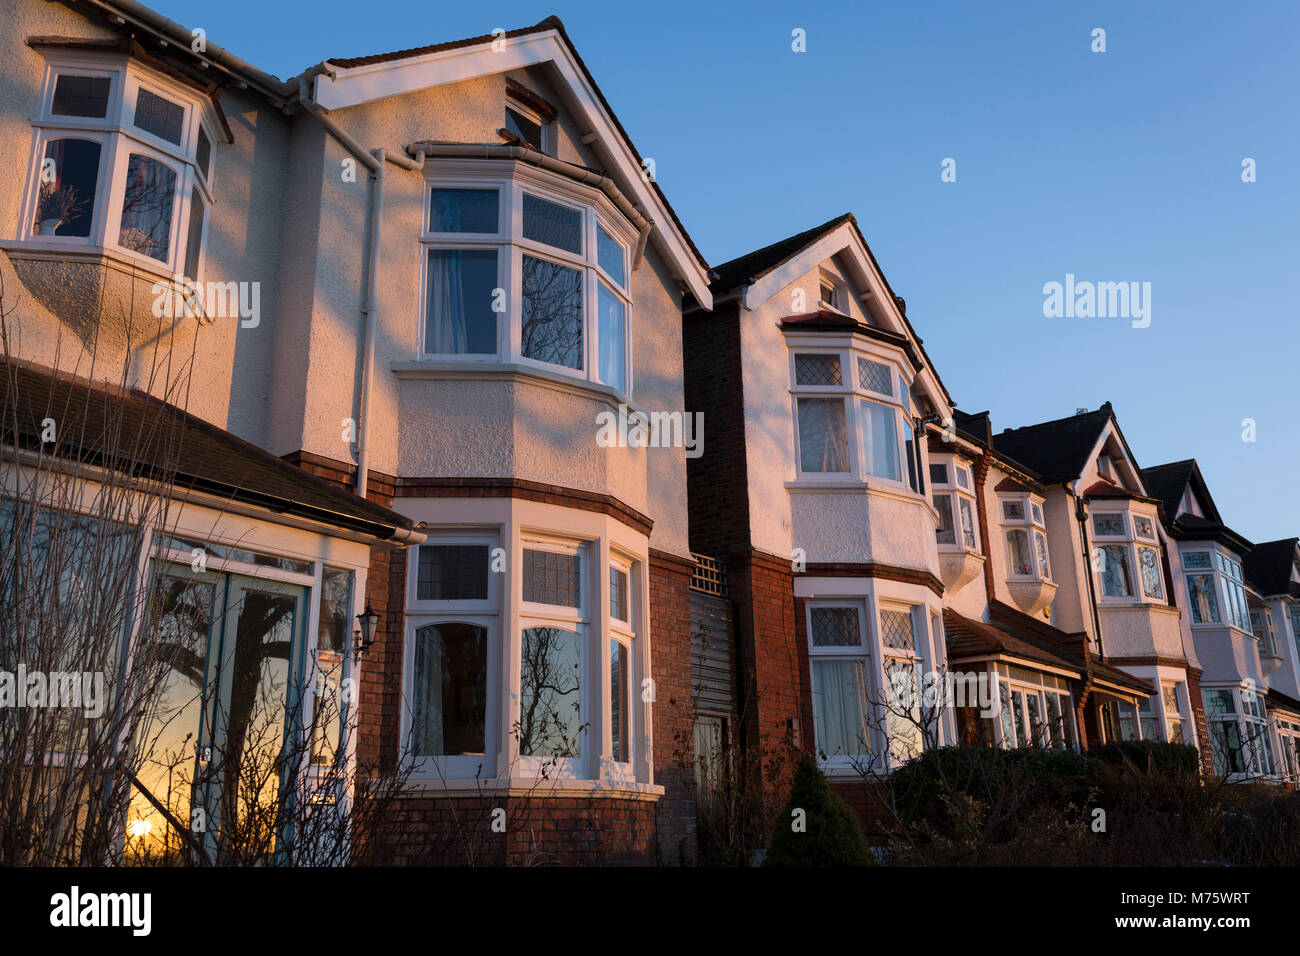 Halb-freistehende Edwardian Periode Häuser in der warmen Abendsonne, am 7. März 2018, im Londoner Stadtteil Lambeth. Stockfoto